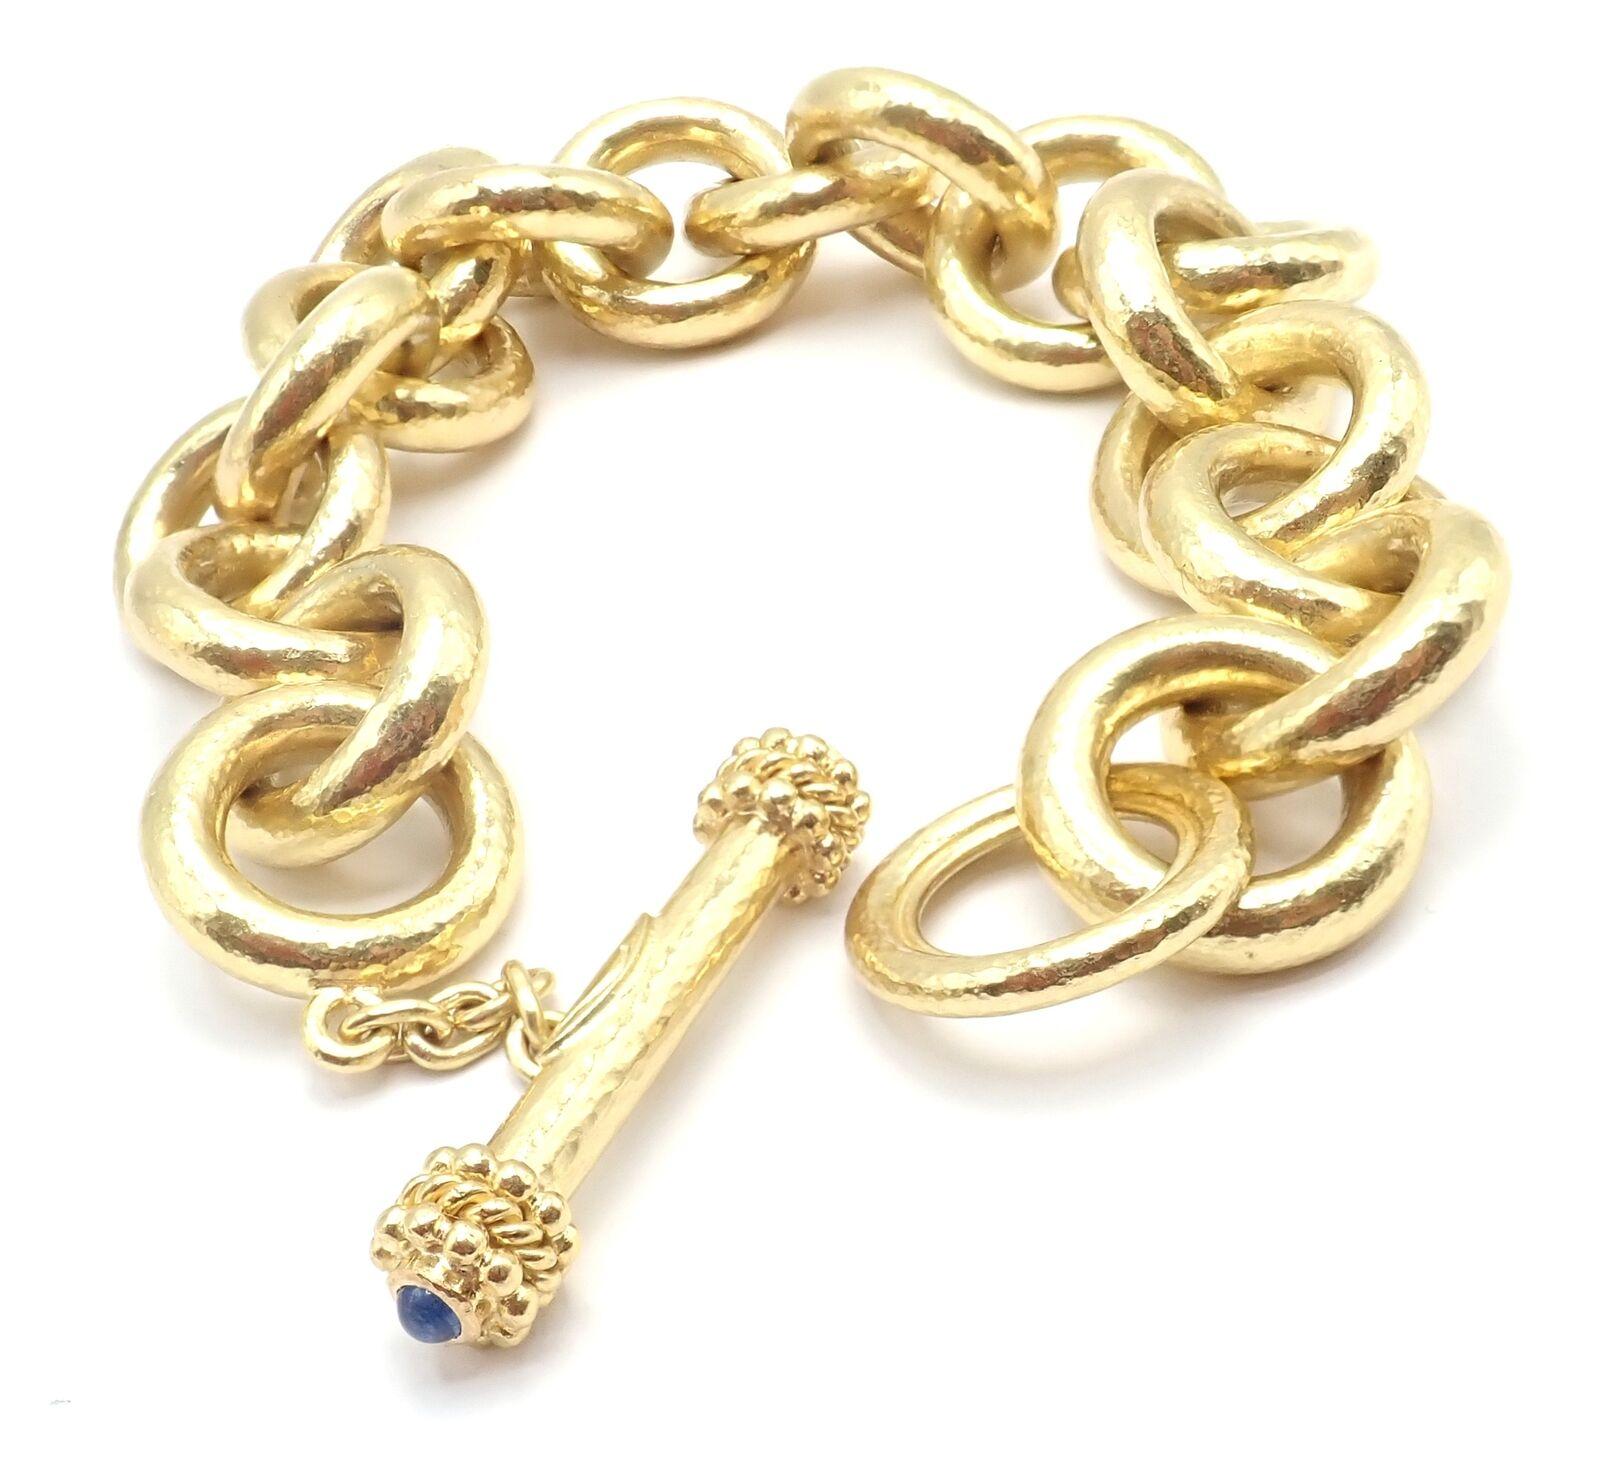 18k Yellow Hammered Gold Sapphire Toggle Link Armband von Elizabeth Locke. 
Mit 2 Cabochon-Saphiren.
Einzelheiten: 
Länge: 8